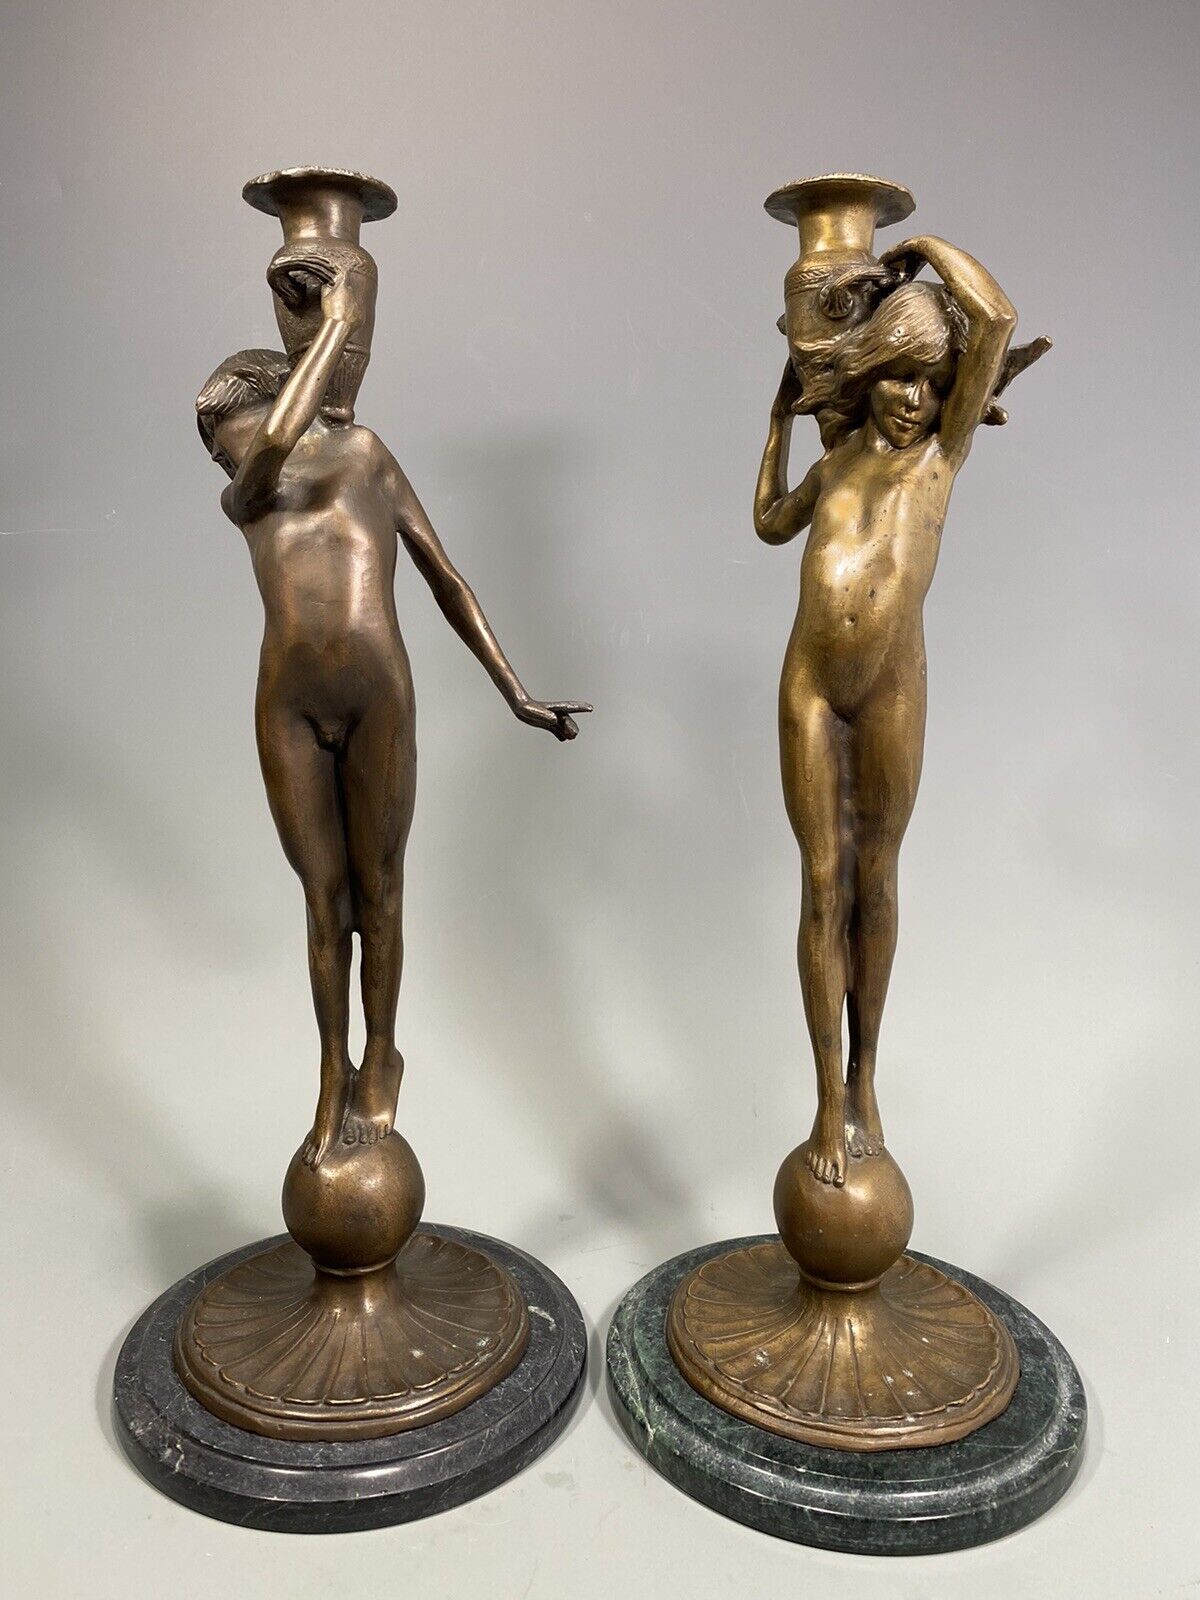 Exquisite Pair of Art Nouveau Style Cast Bronze Candlesticks - E. F. McCartan